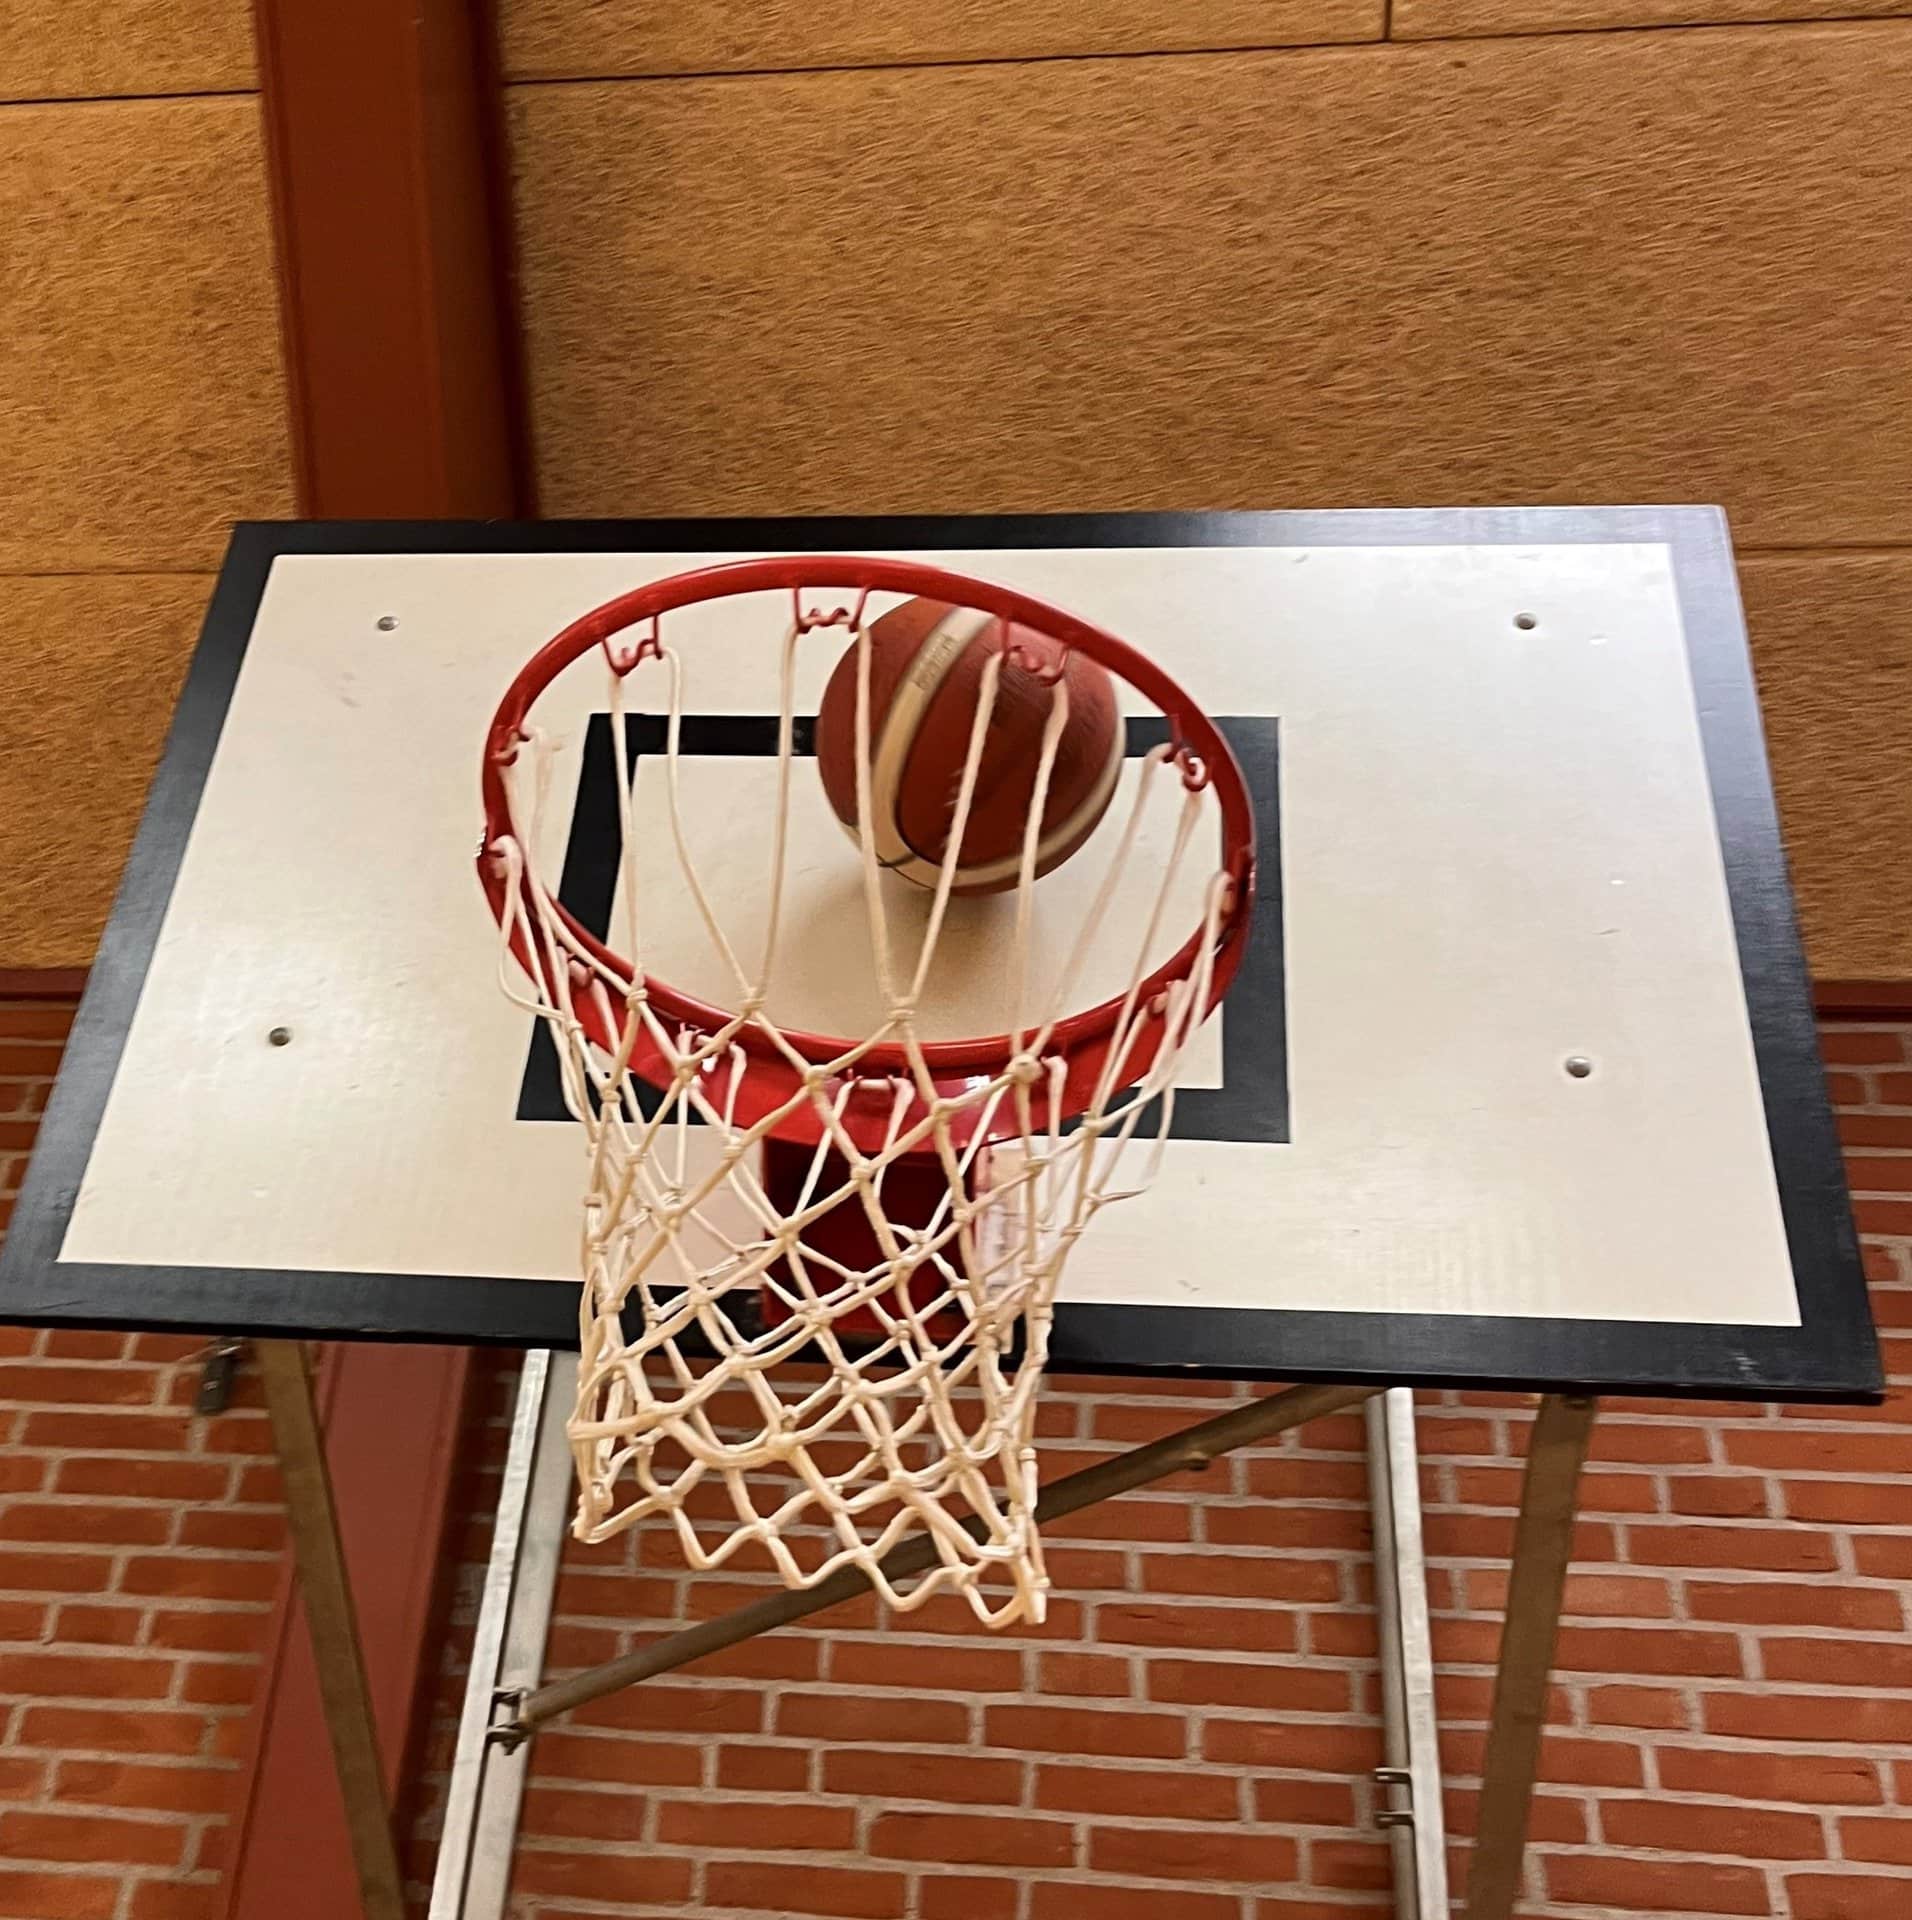 Basketball 3